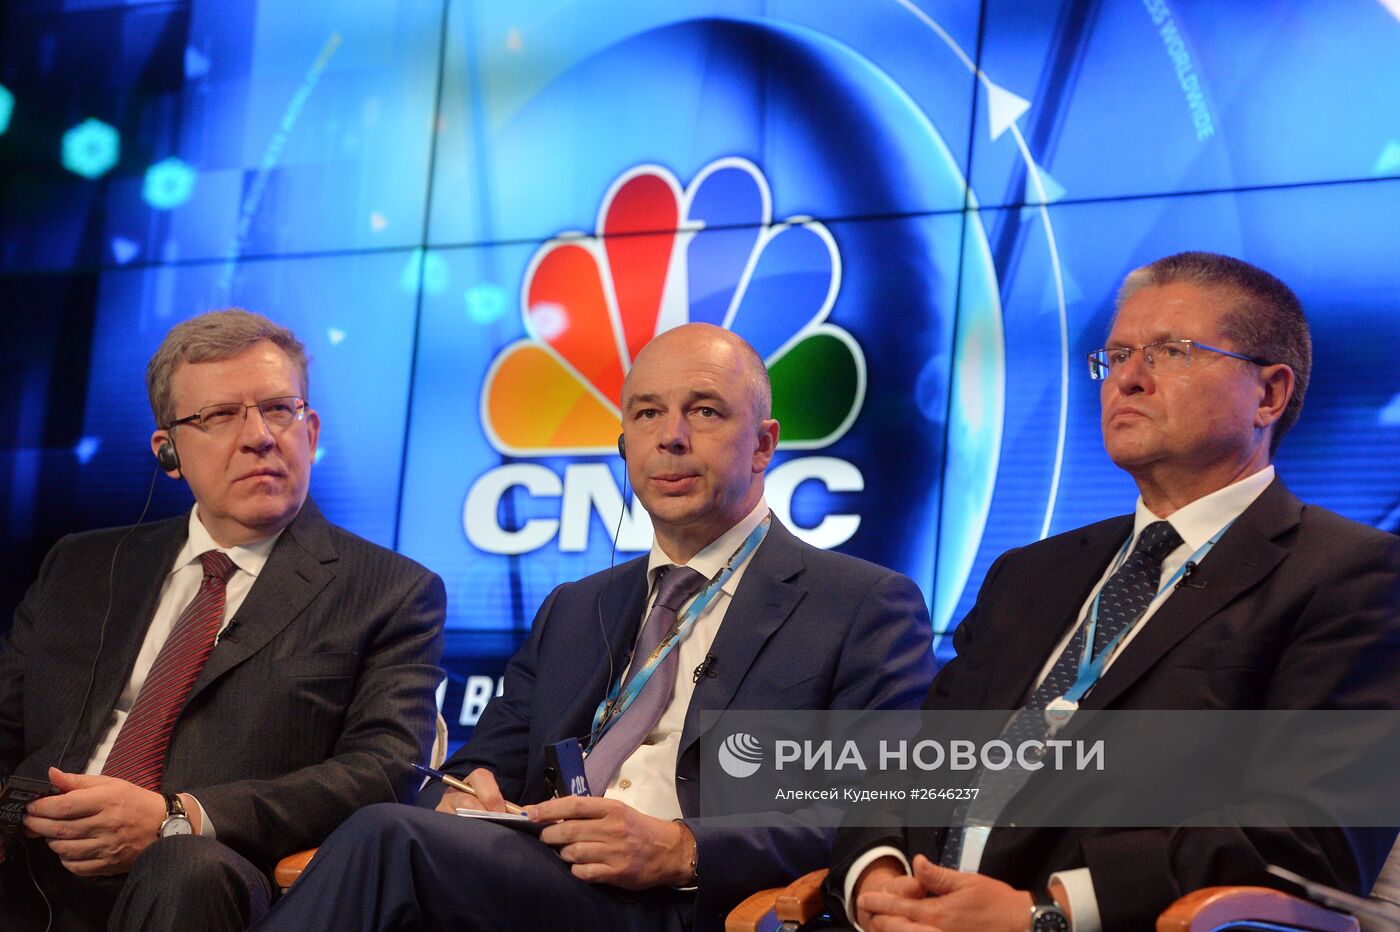 Теледебаты CNBC "Структурные реформы и антикризисная политика в России. Что дальше?" в рамках ПМЭФ 2015